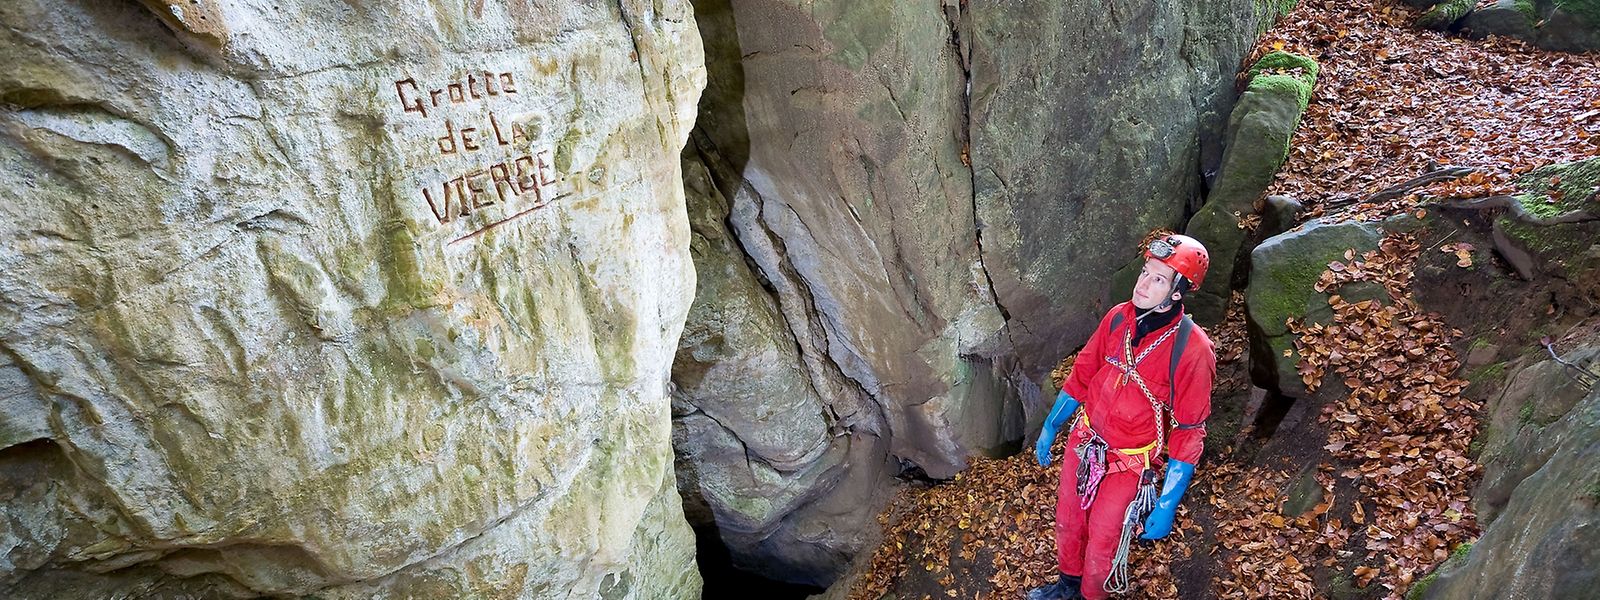 Die Grotte de la Vierge ist mit 430 Metern die drittlängste Höhle im Land.